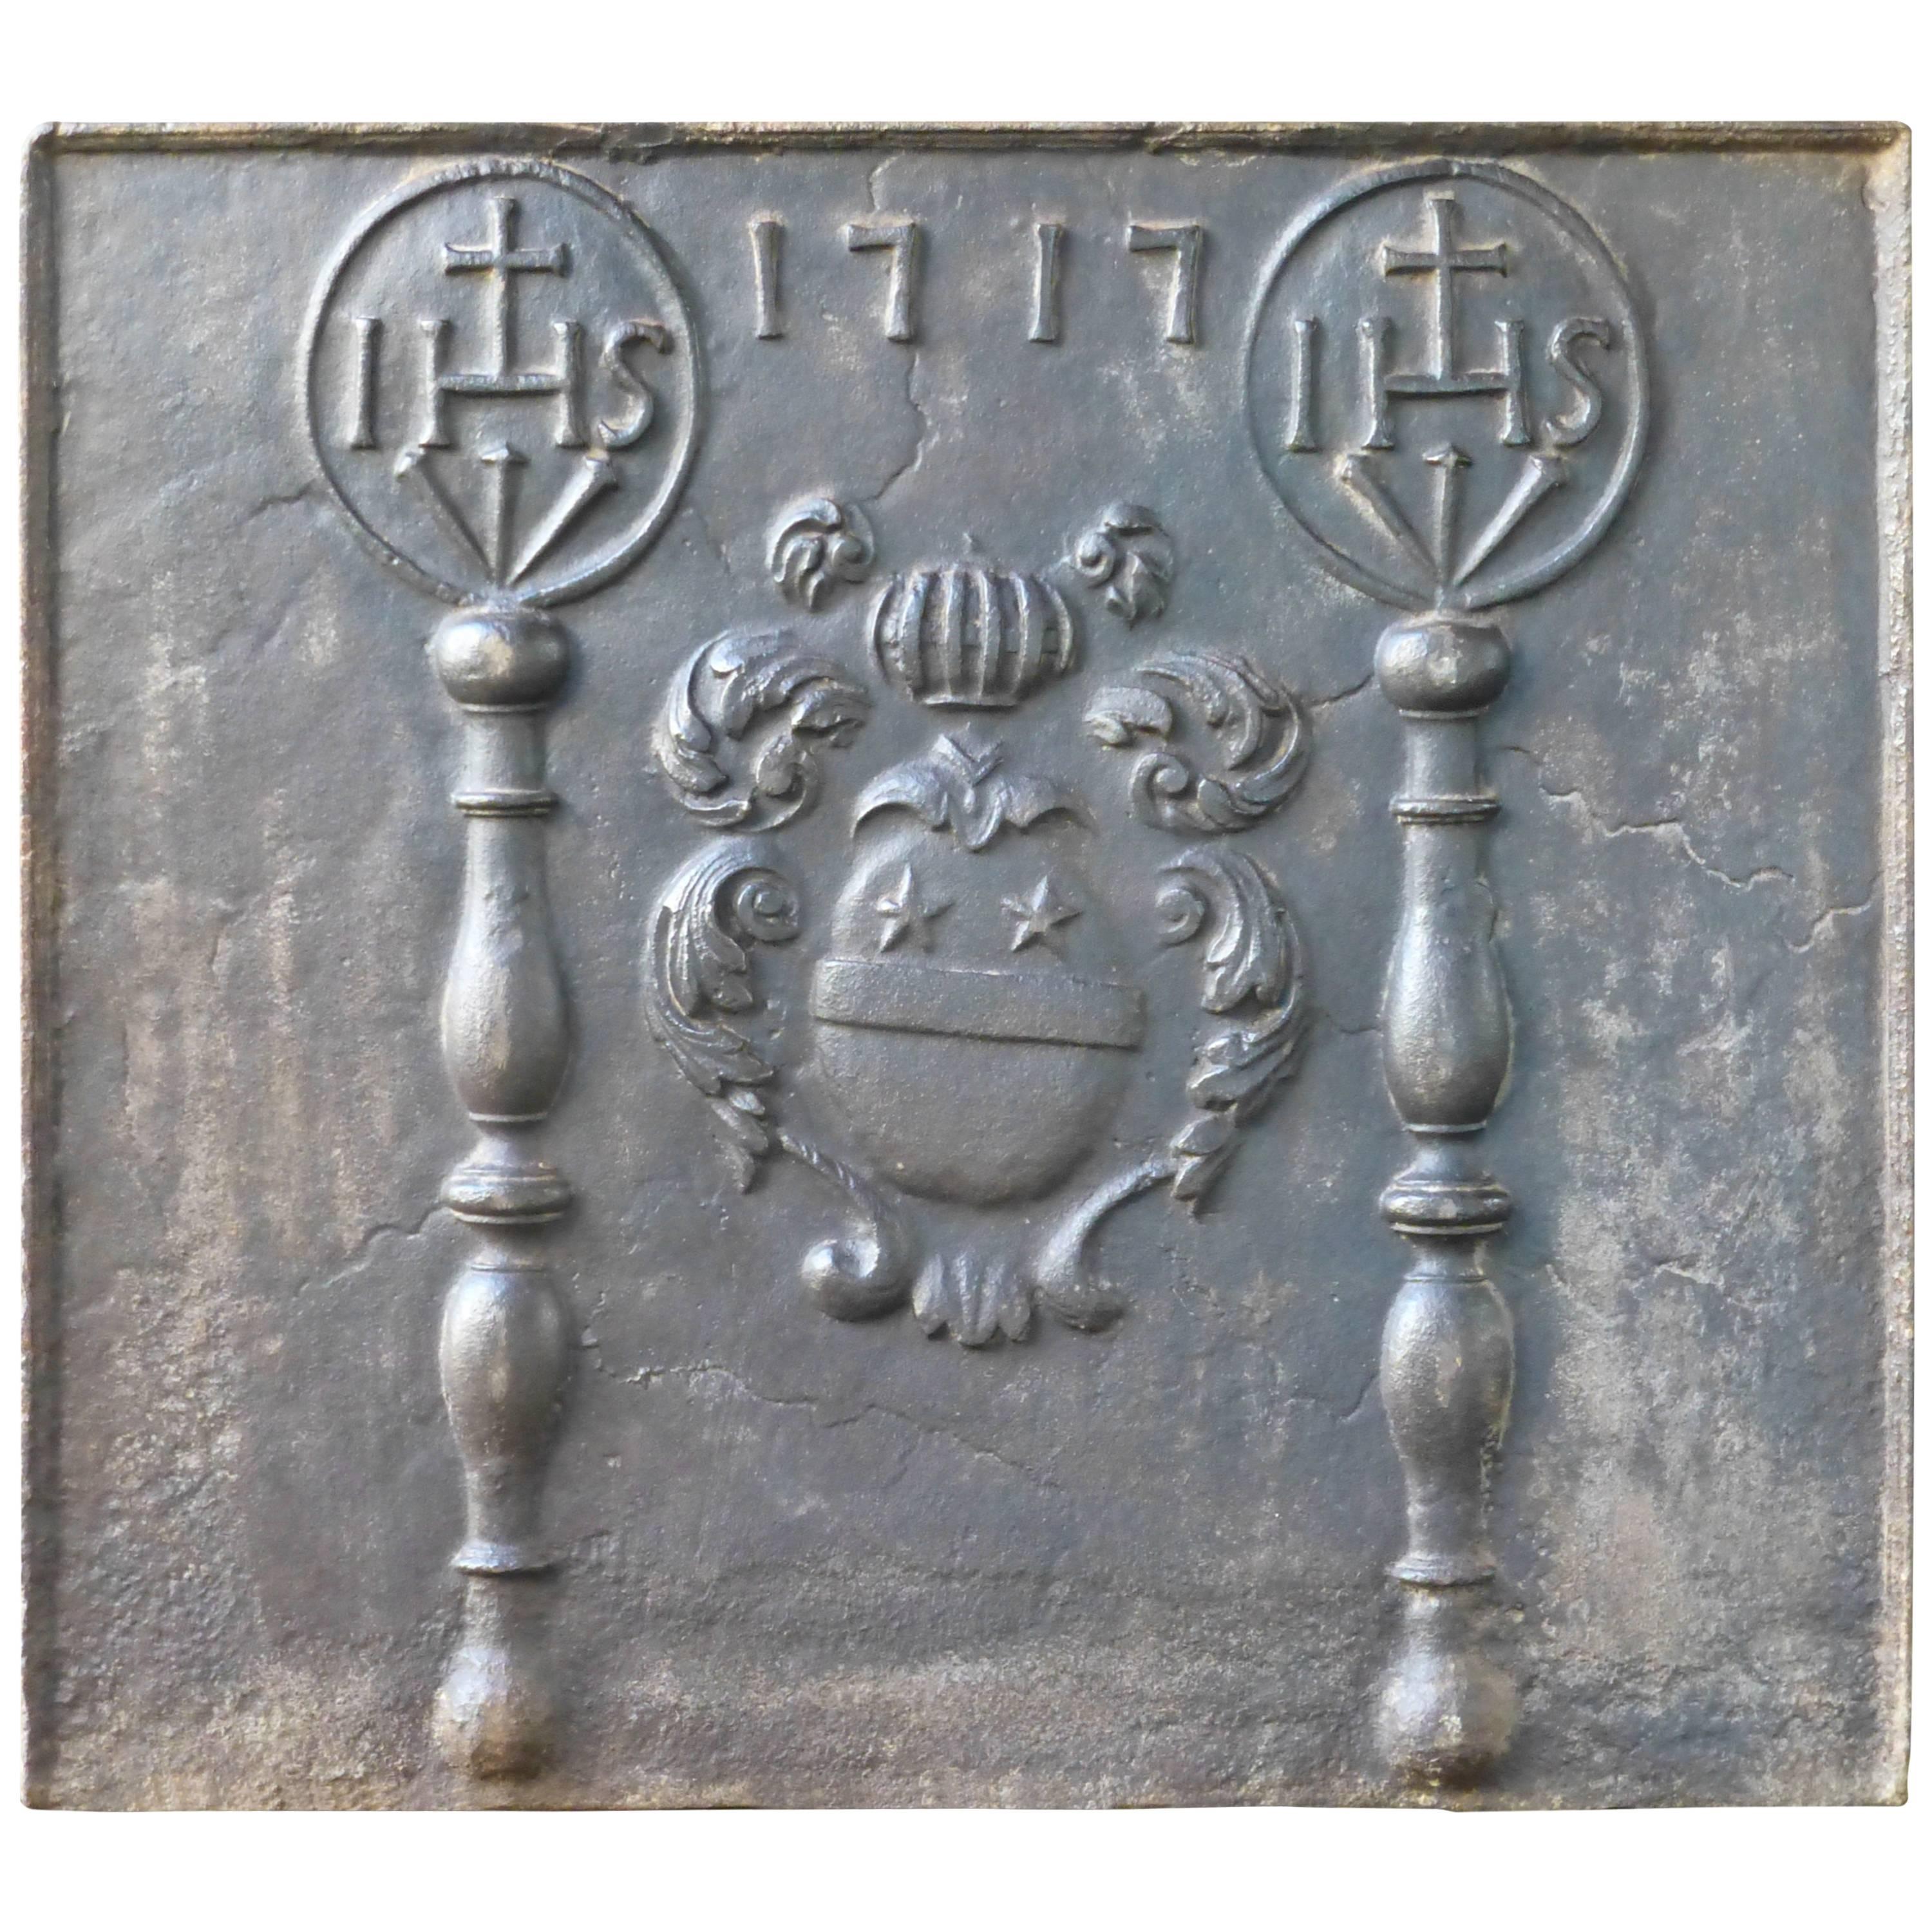 Plaque de cheminée / dosseret aux armes de France du XVIIIe siècle